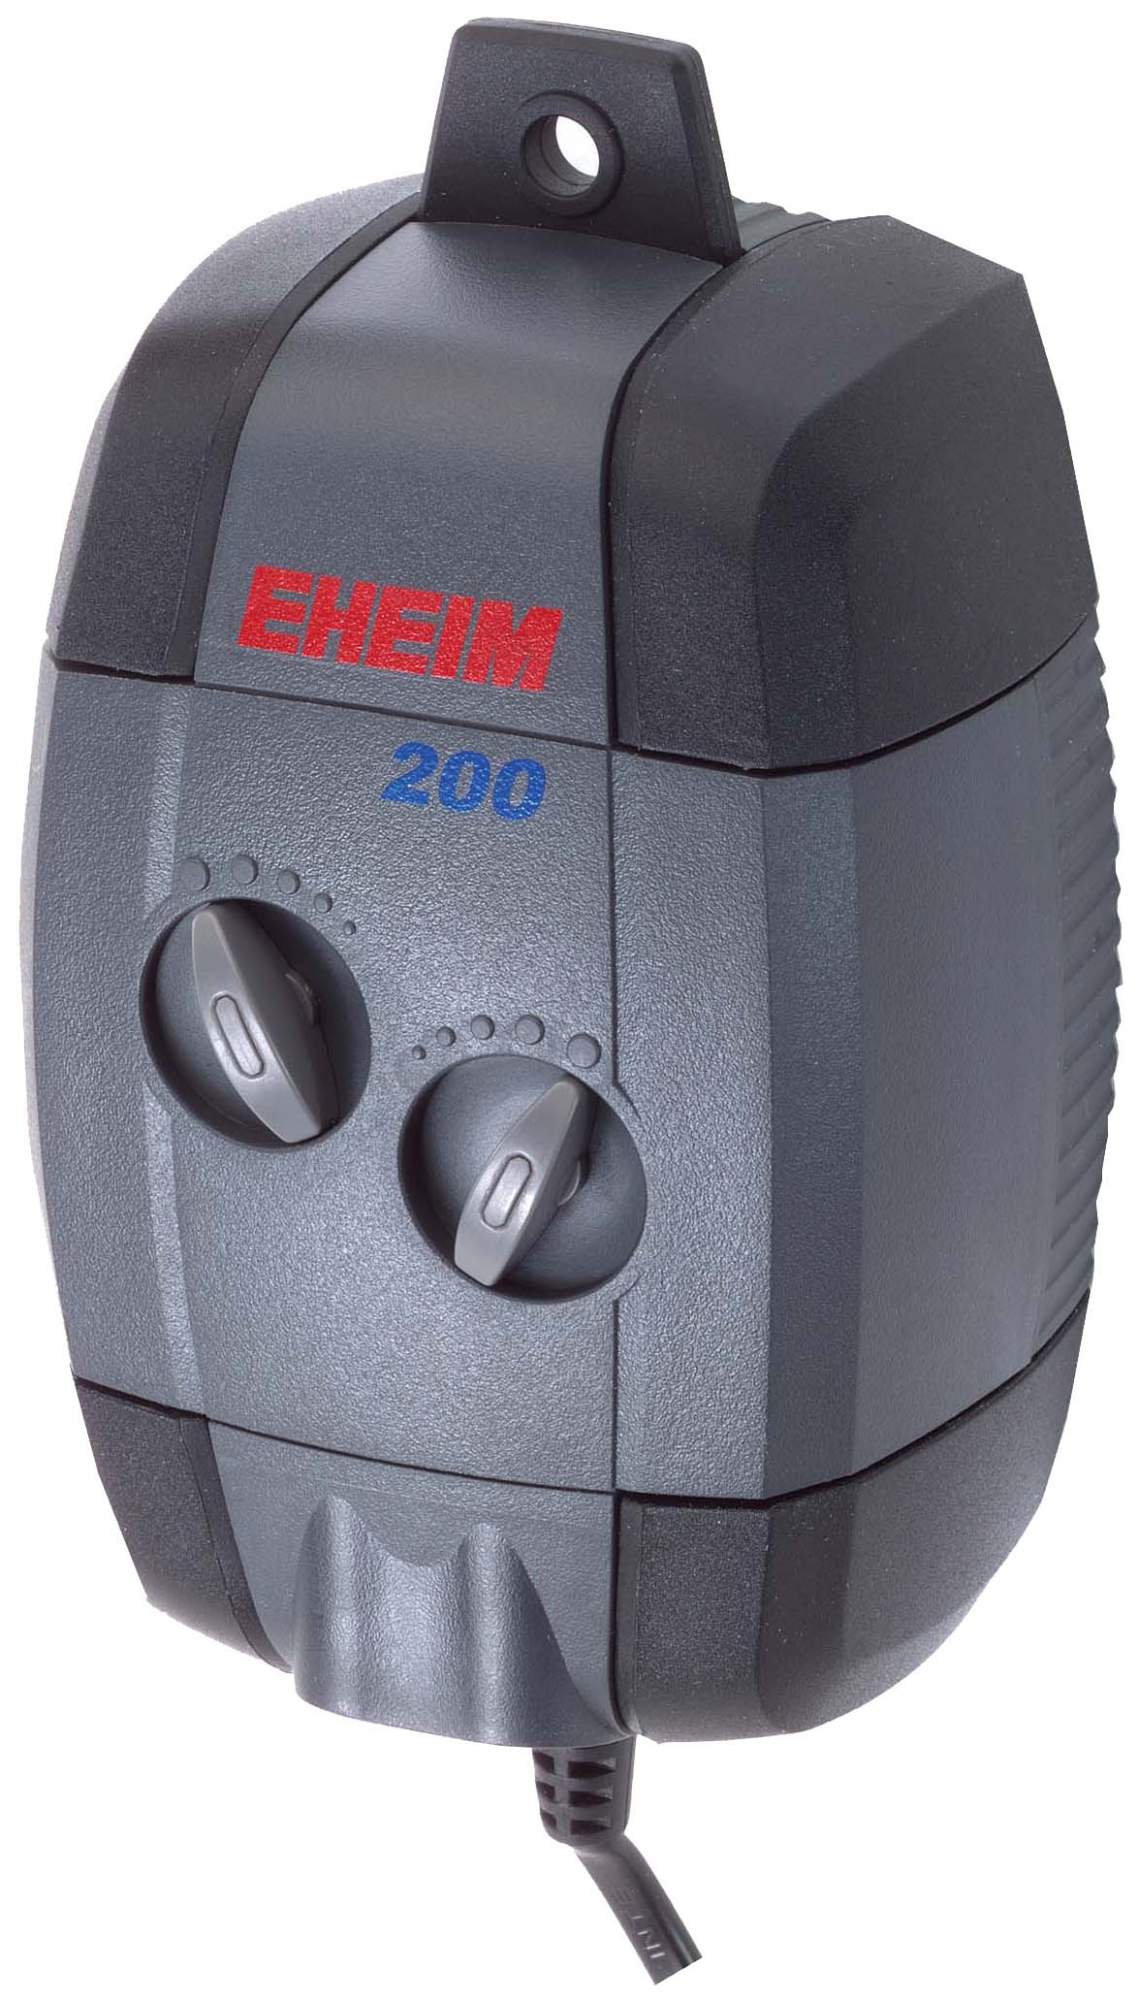 Компрессор для аквариума Eheim Air Pump 200 двуканальный, 200 л/час